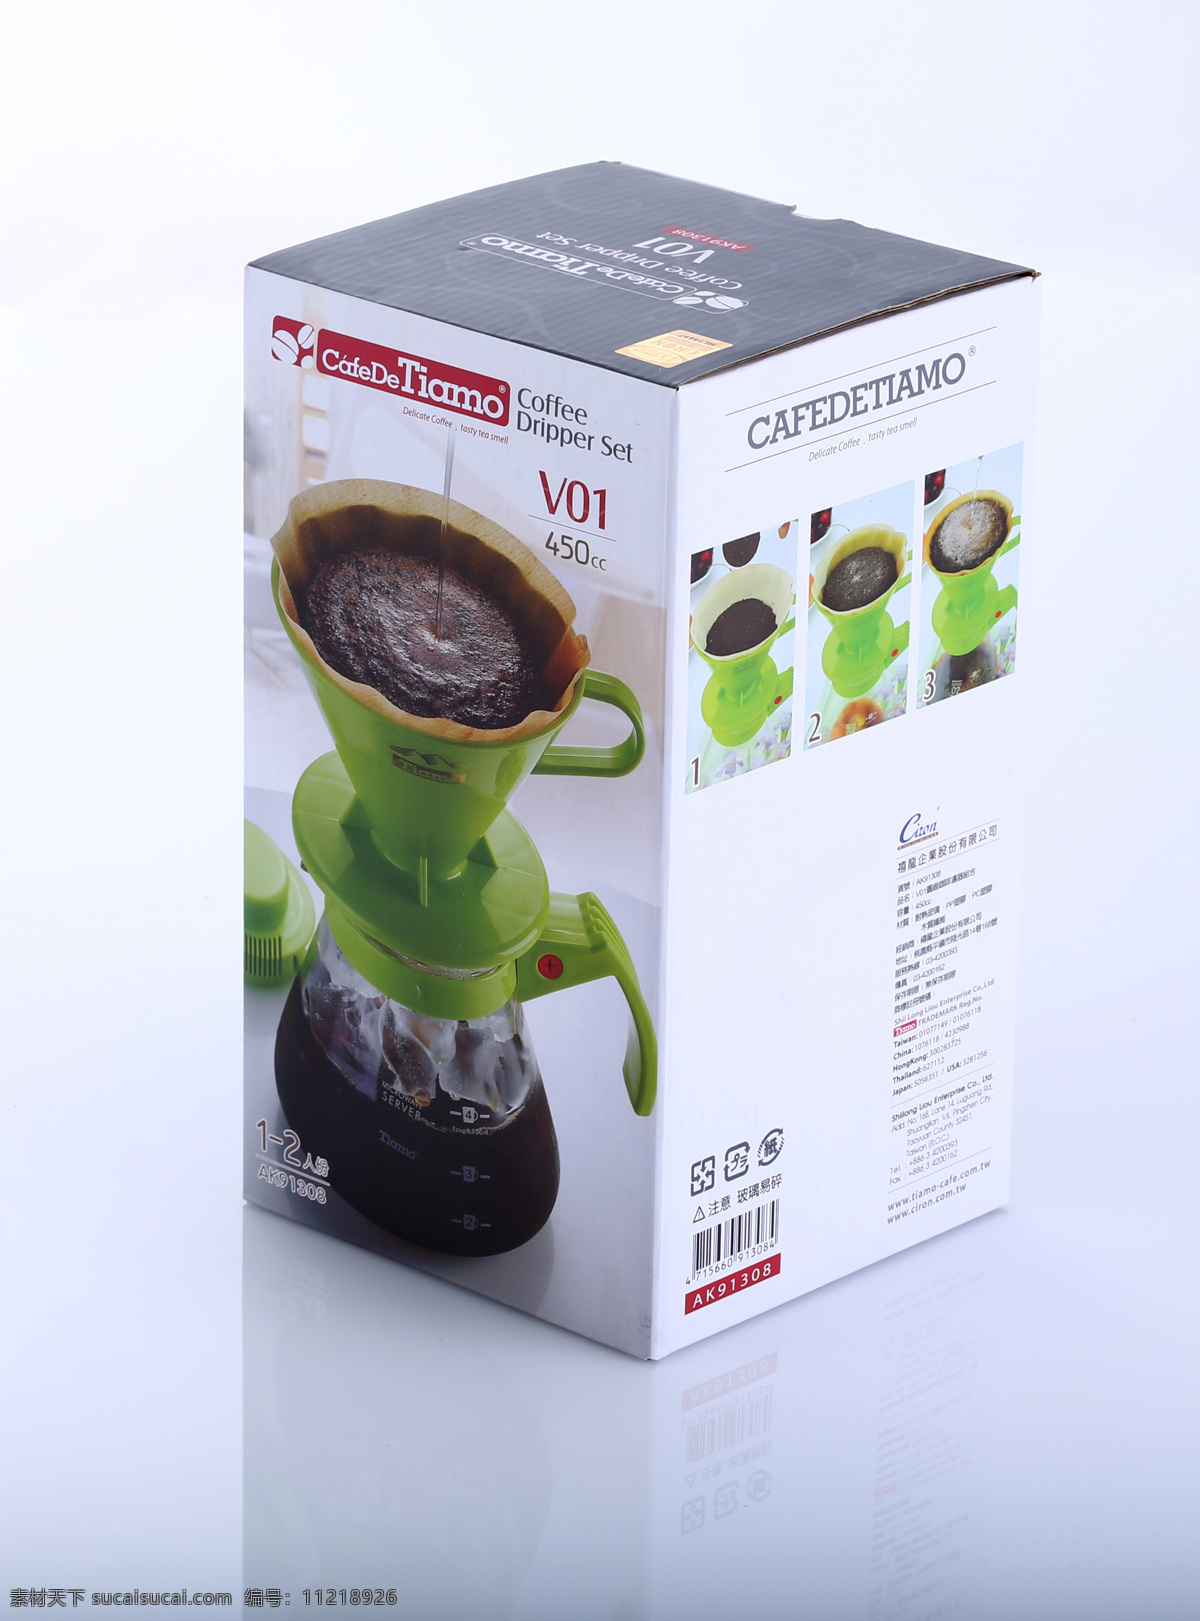 包装 生活百科 生活素材 咖啡 冲泡 组合 tiamo 咖啡冲泡组合 绿色组合 台湾制造 psd源文件 包装设计